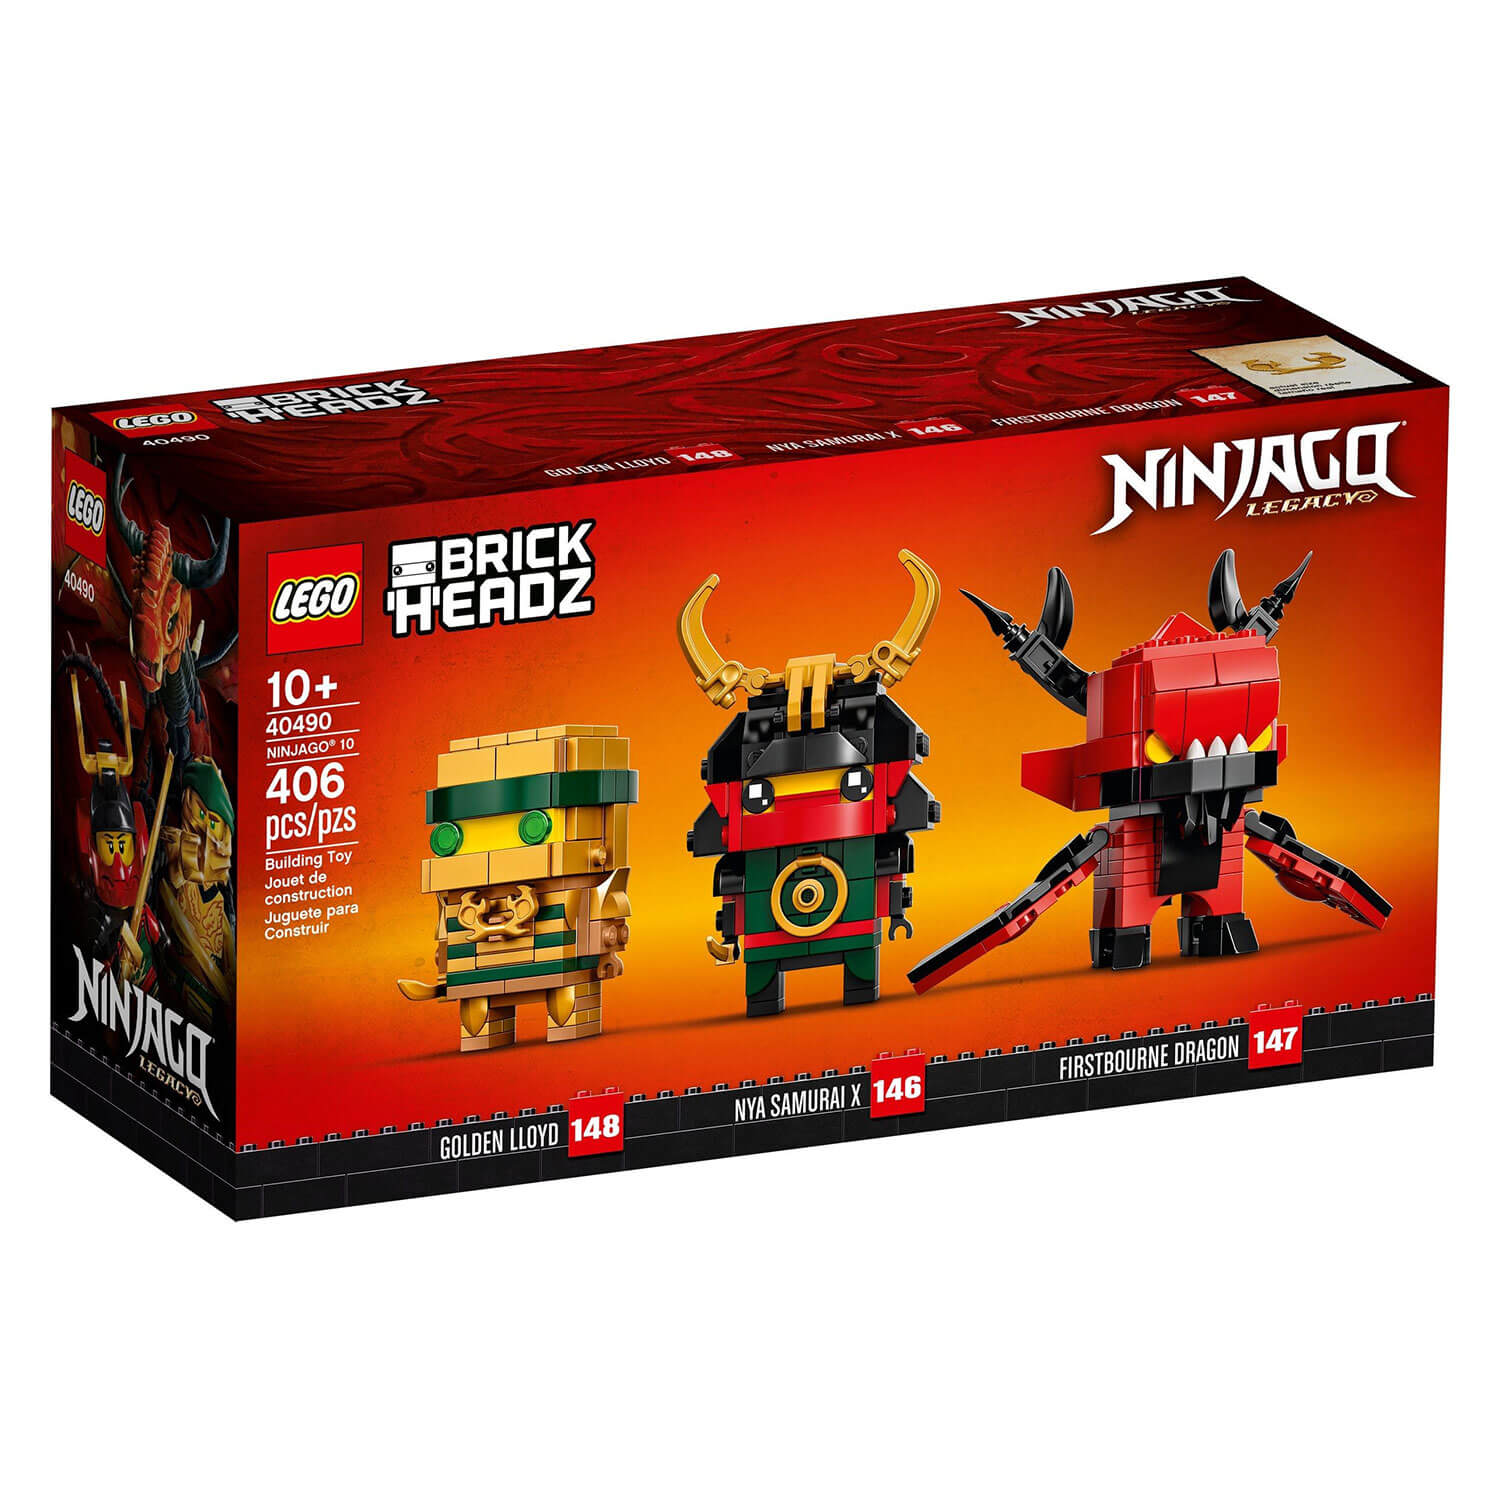 40490 Ninjago 10ta Godišnjica Brickheadz